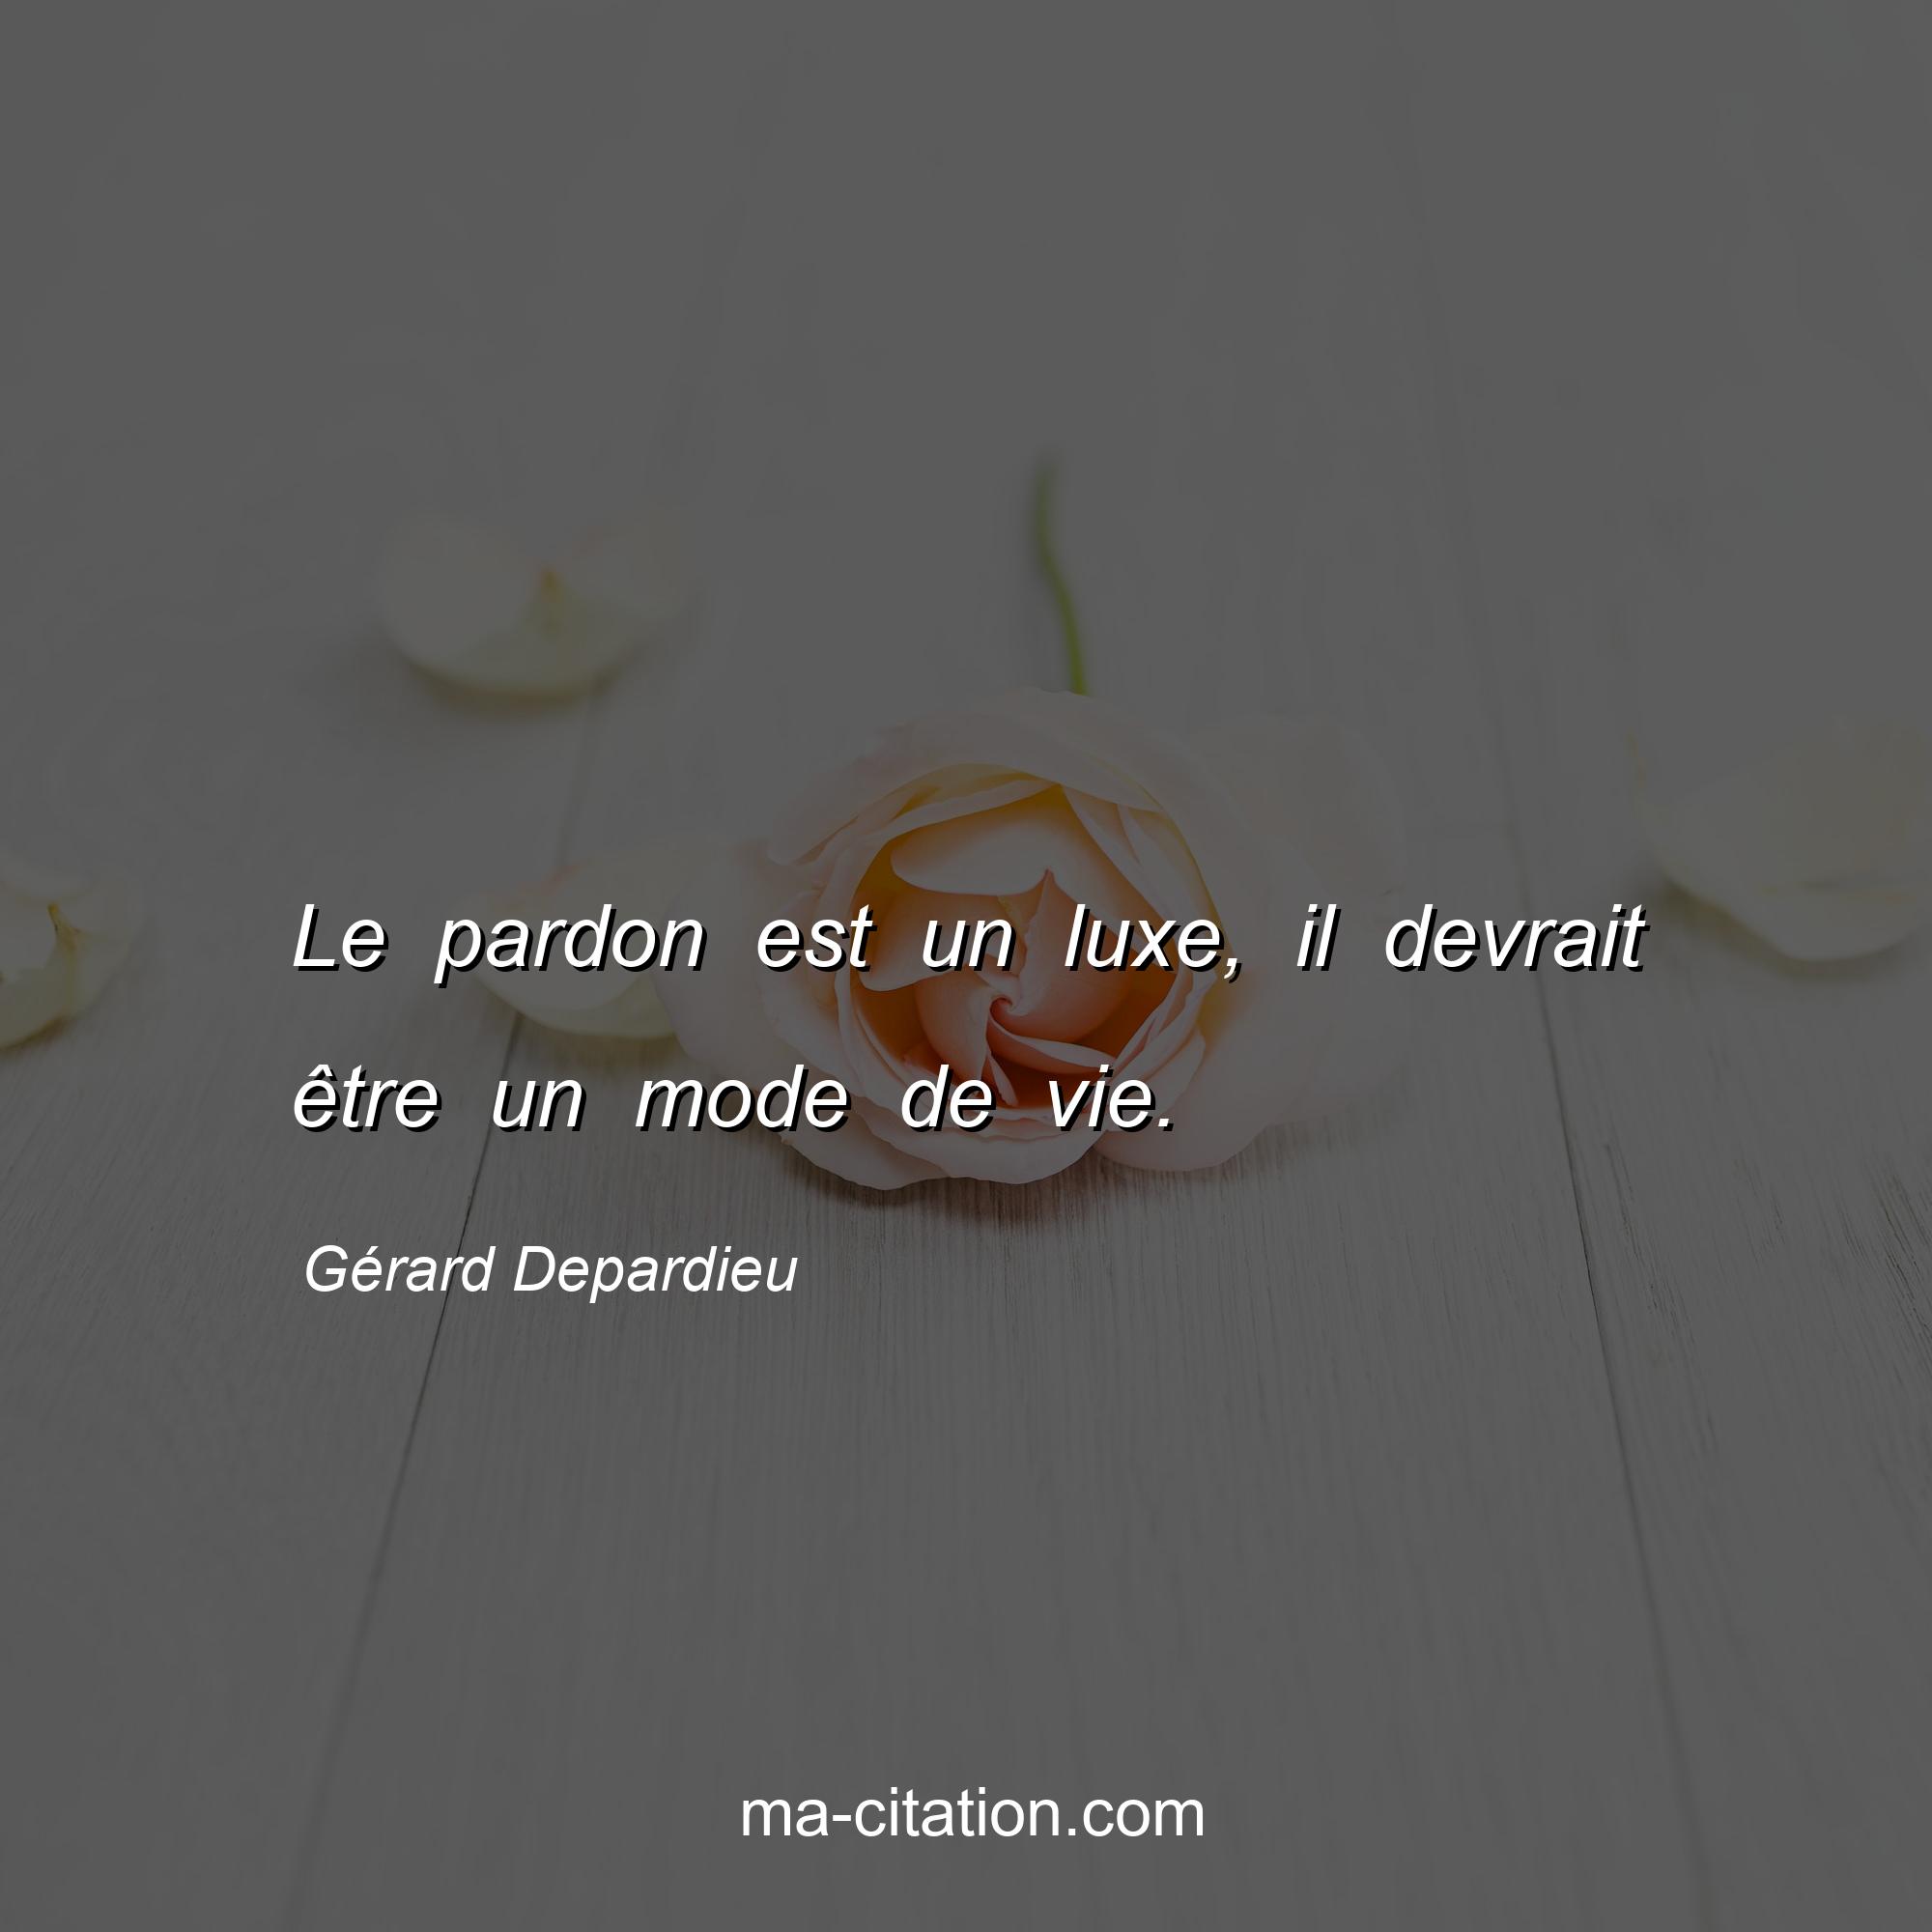 Gérard Depardieu : Le pardon est un luxe, il devrait être un mode de vie.